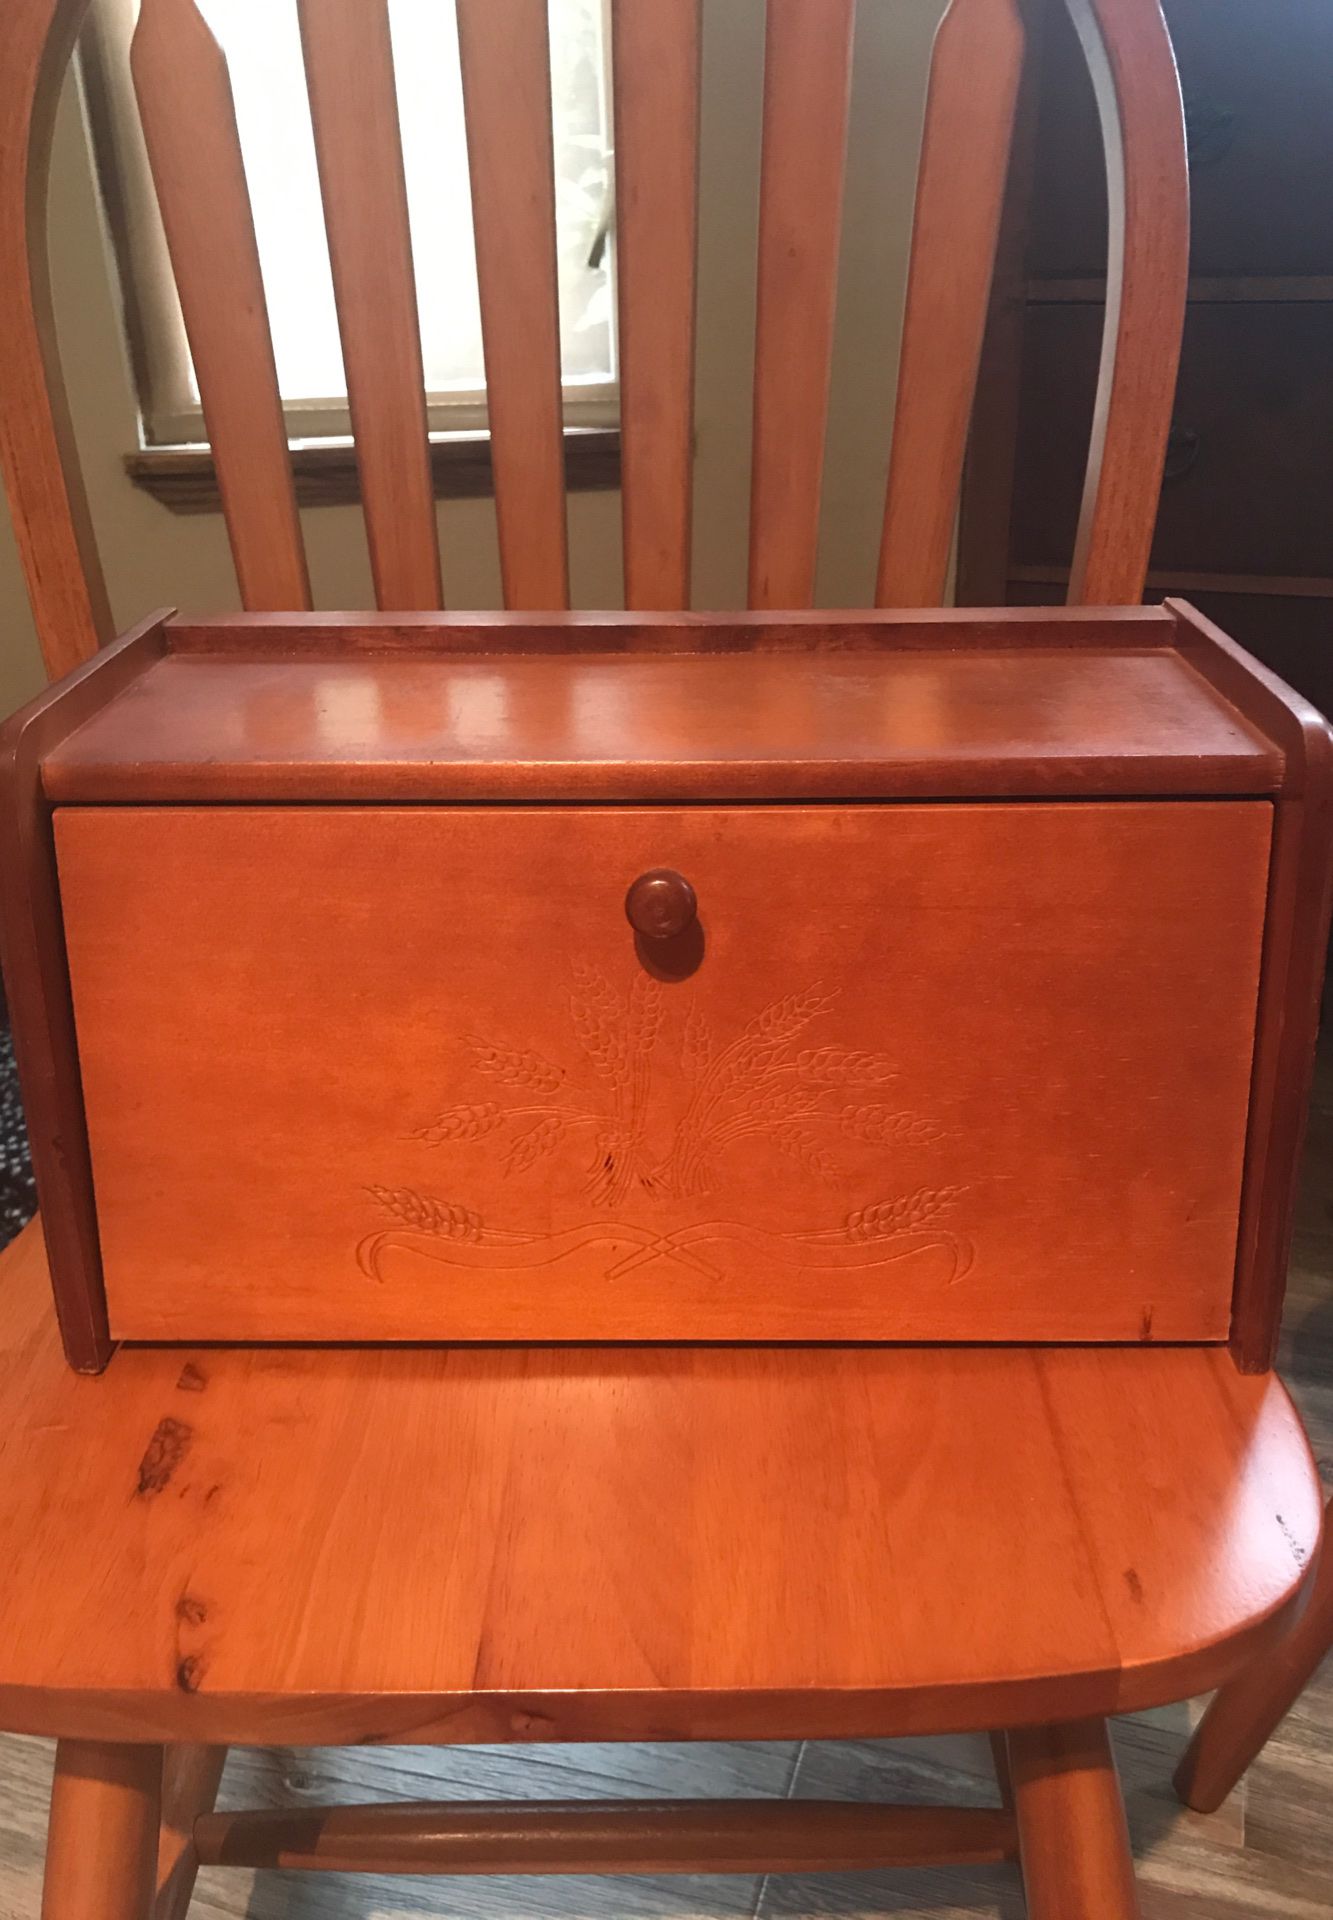 Older Wooden Breadbox